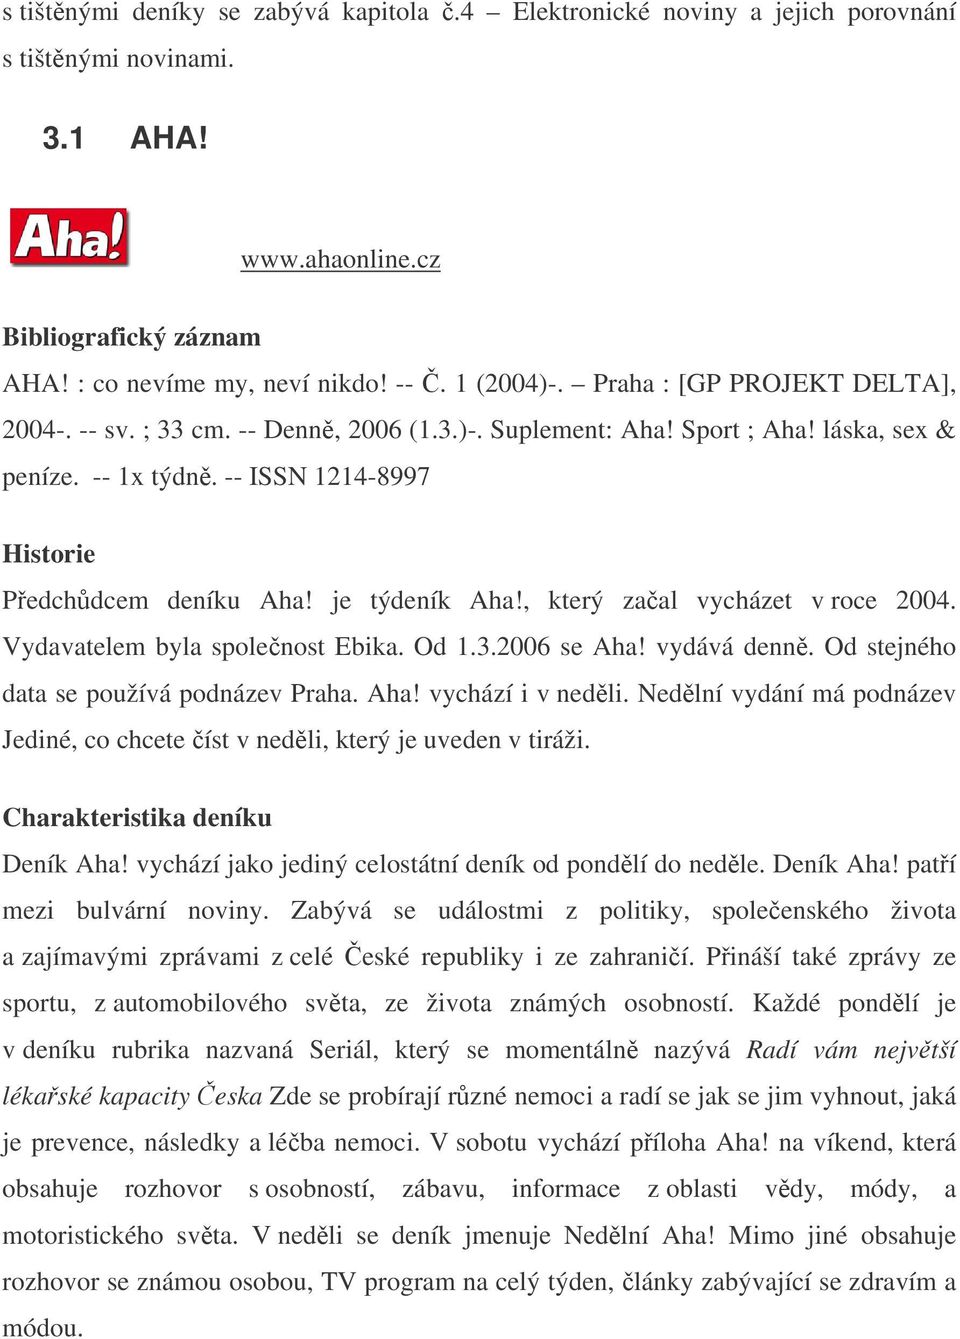 , který zaal vycházet v roce 2004. Vydavatelem byla spolenost Ebika. Od 1.3.2006 se Aha! vydává denn. Od stejného data se používá podnázev Praha. Aha! vychází i v nedli.